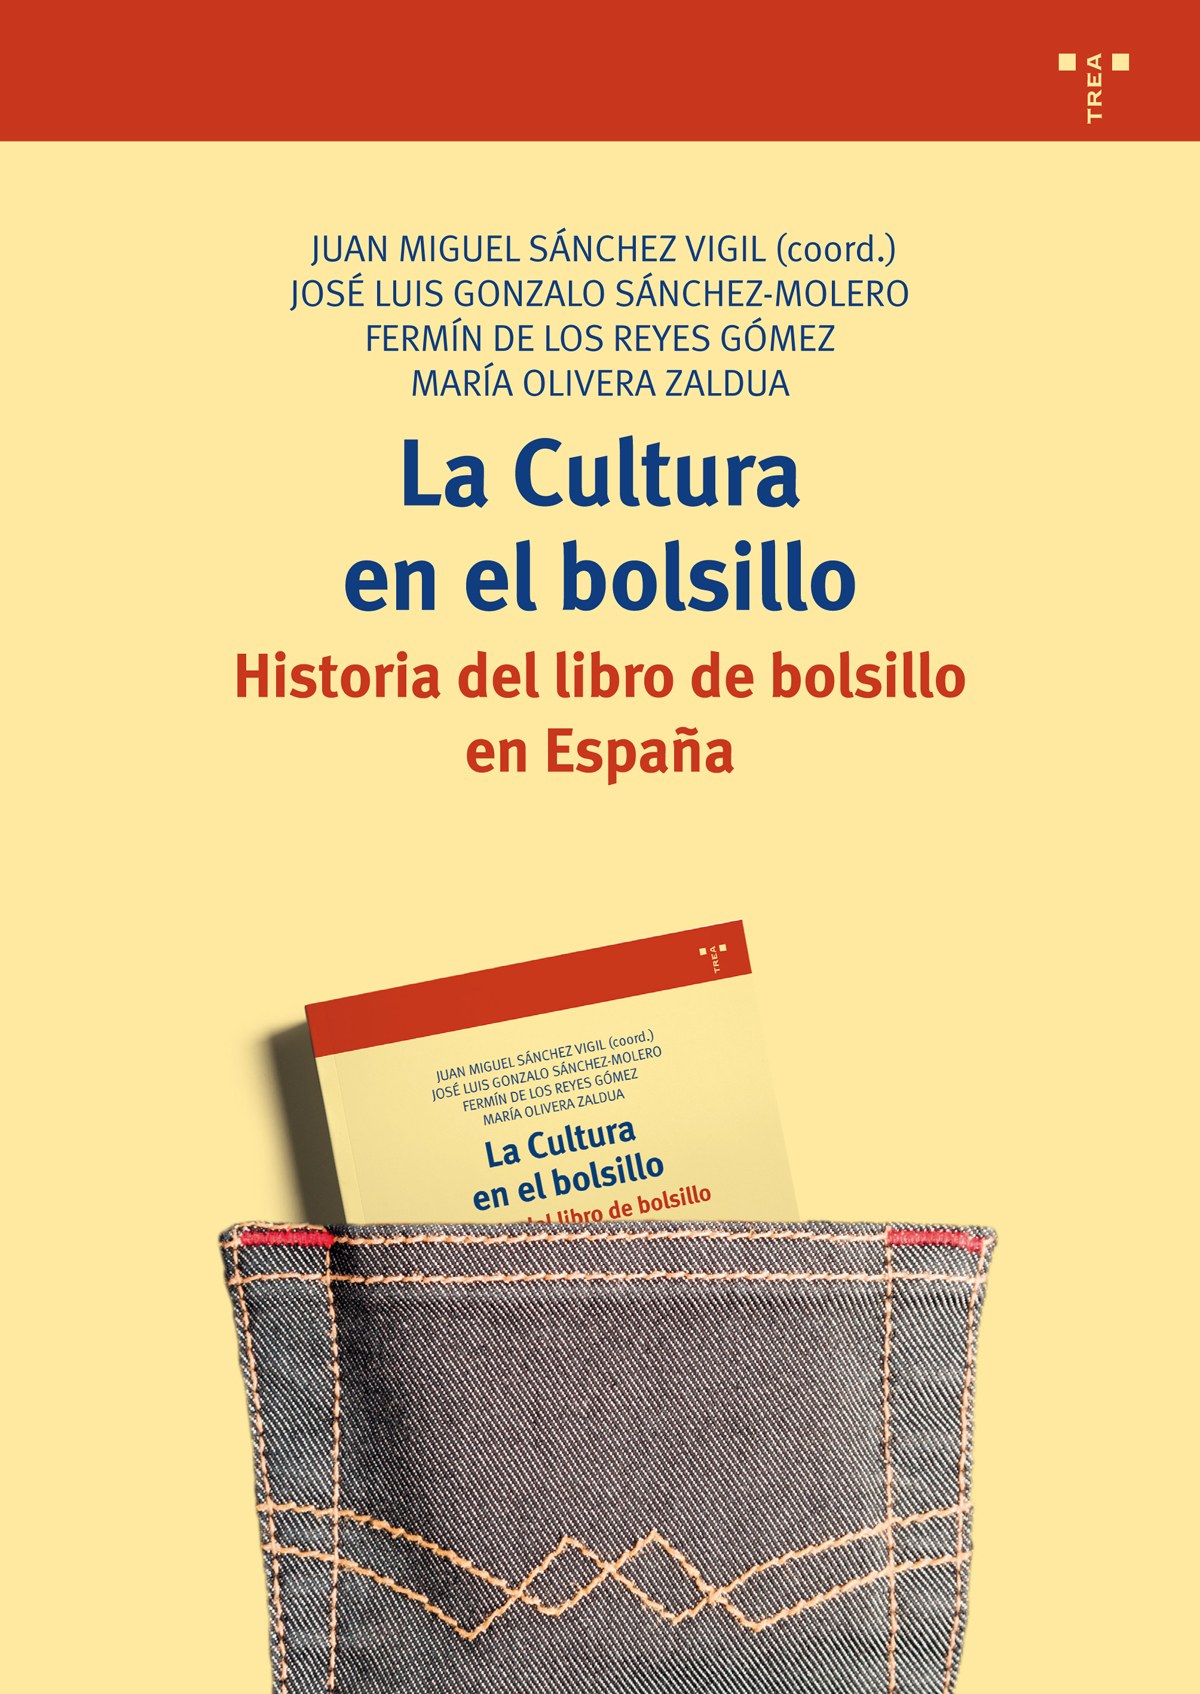 La cultura en el bolsillo historia del libro de bolsillo en espaÑa - De Los Reyes, Fermin/Sánchez, Fermin